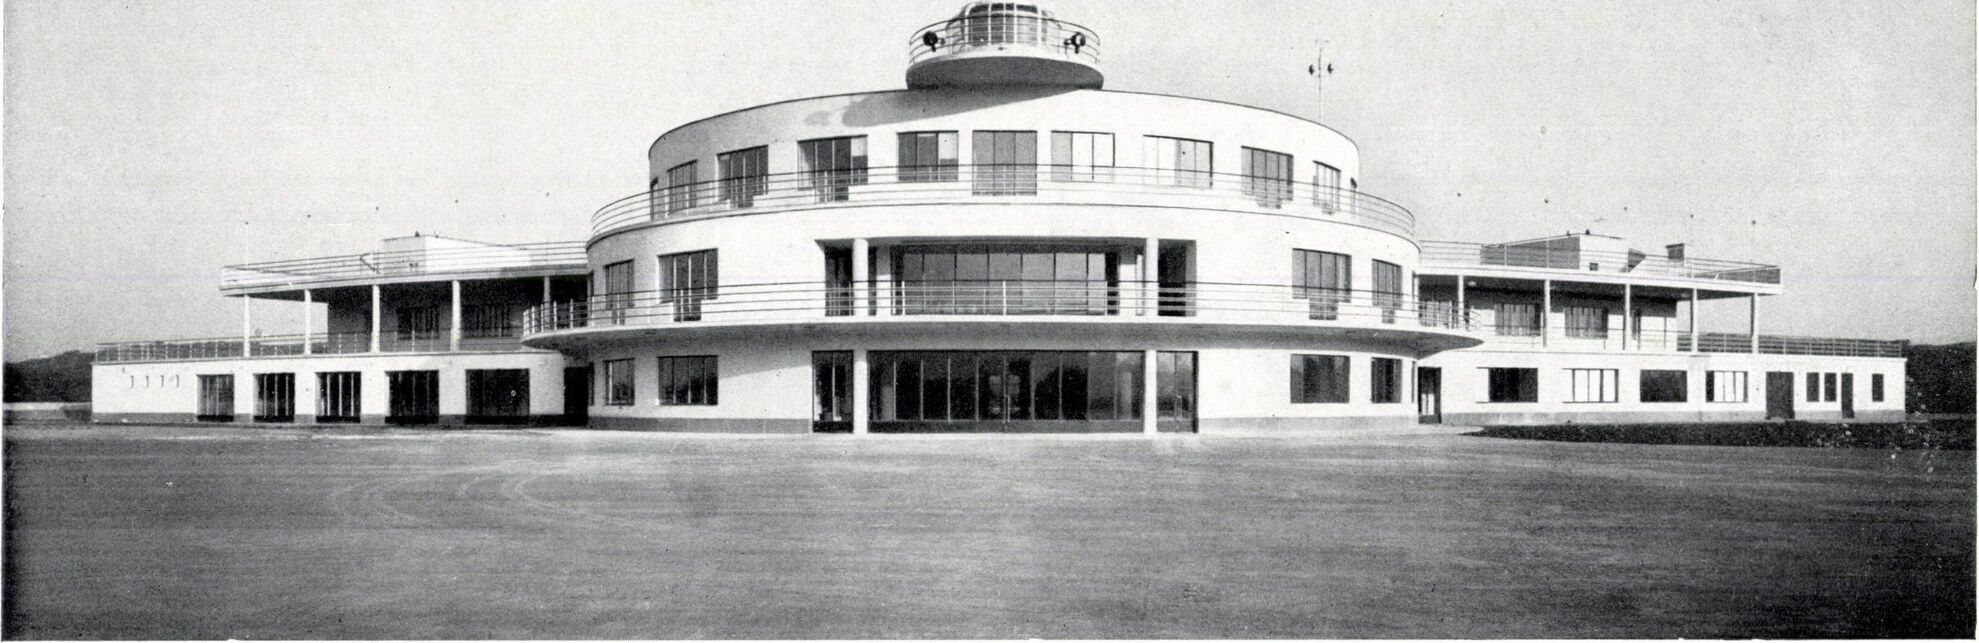 Budapest, Kőérberki út 36., Közforgalmi repülőtér 1937-ben, tervező: Bierbauer Virgil és Králik László (Tér és Forma, 1937/8., 213. o.)